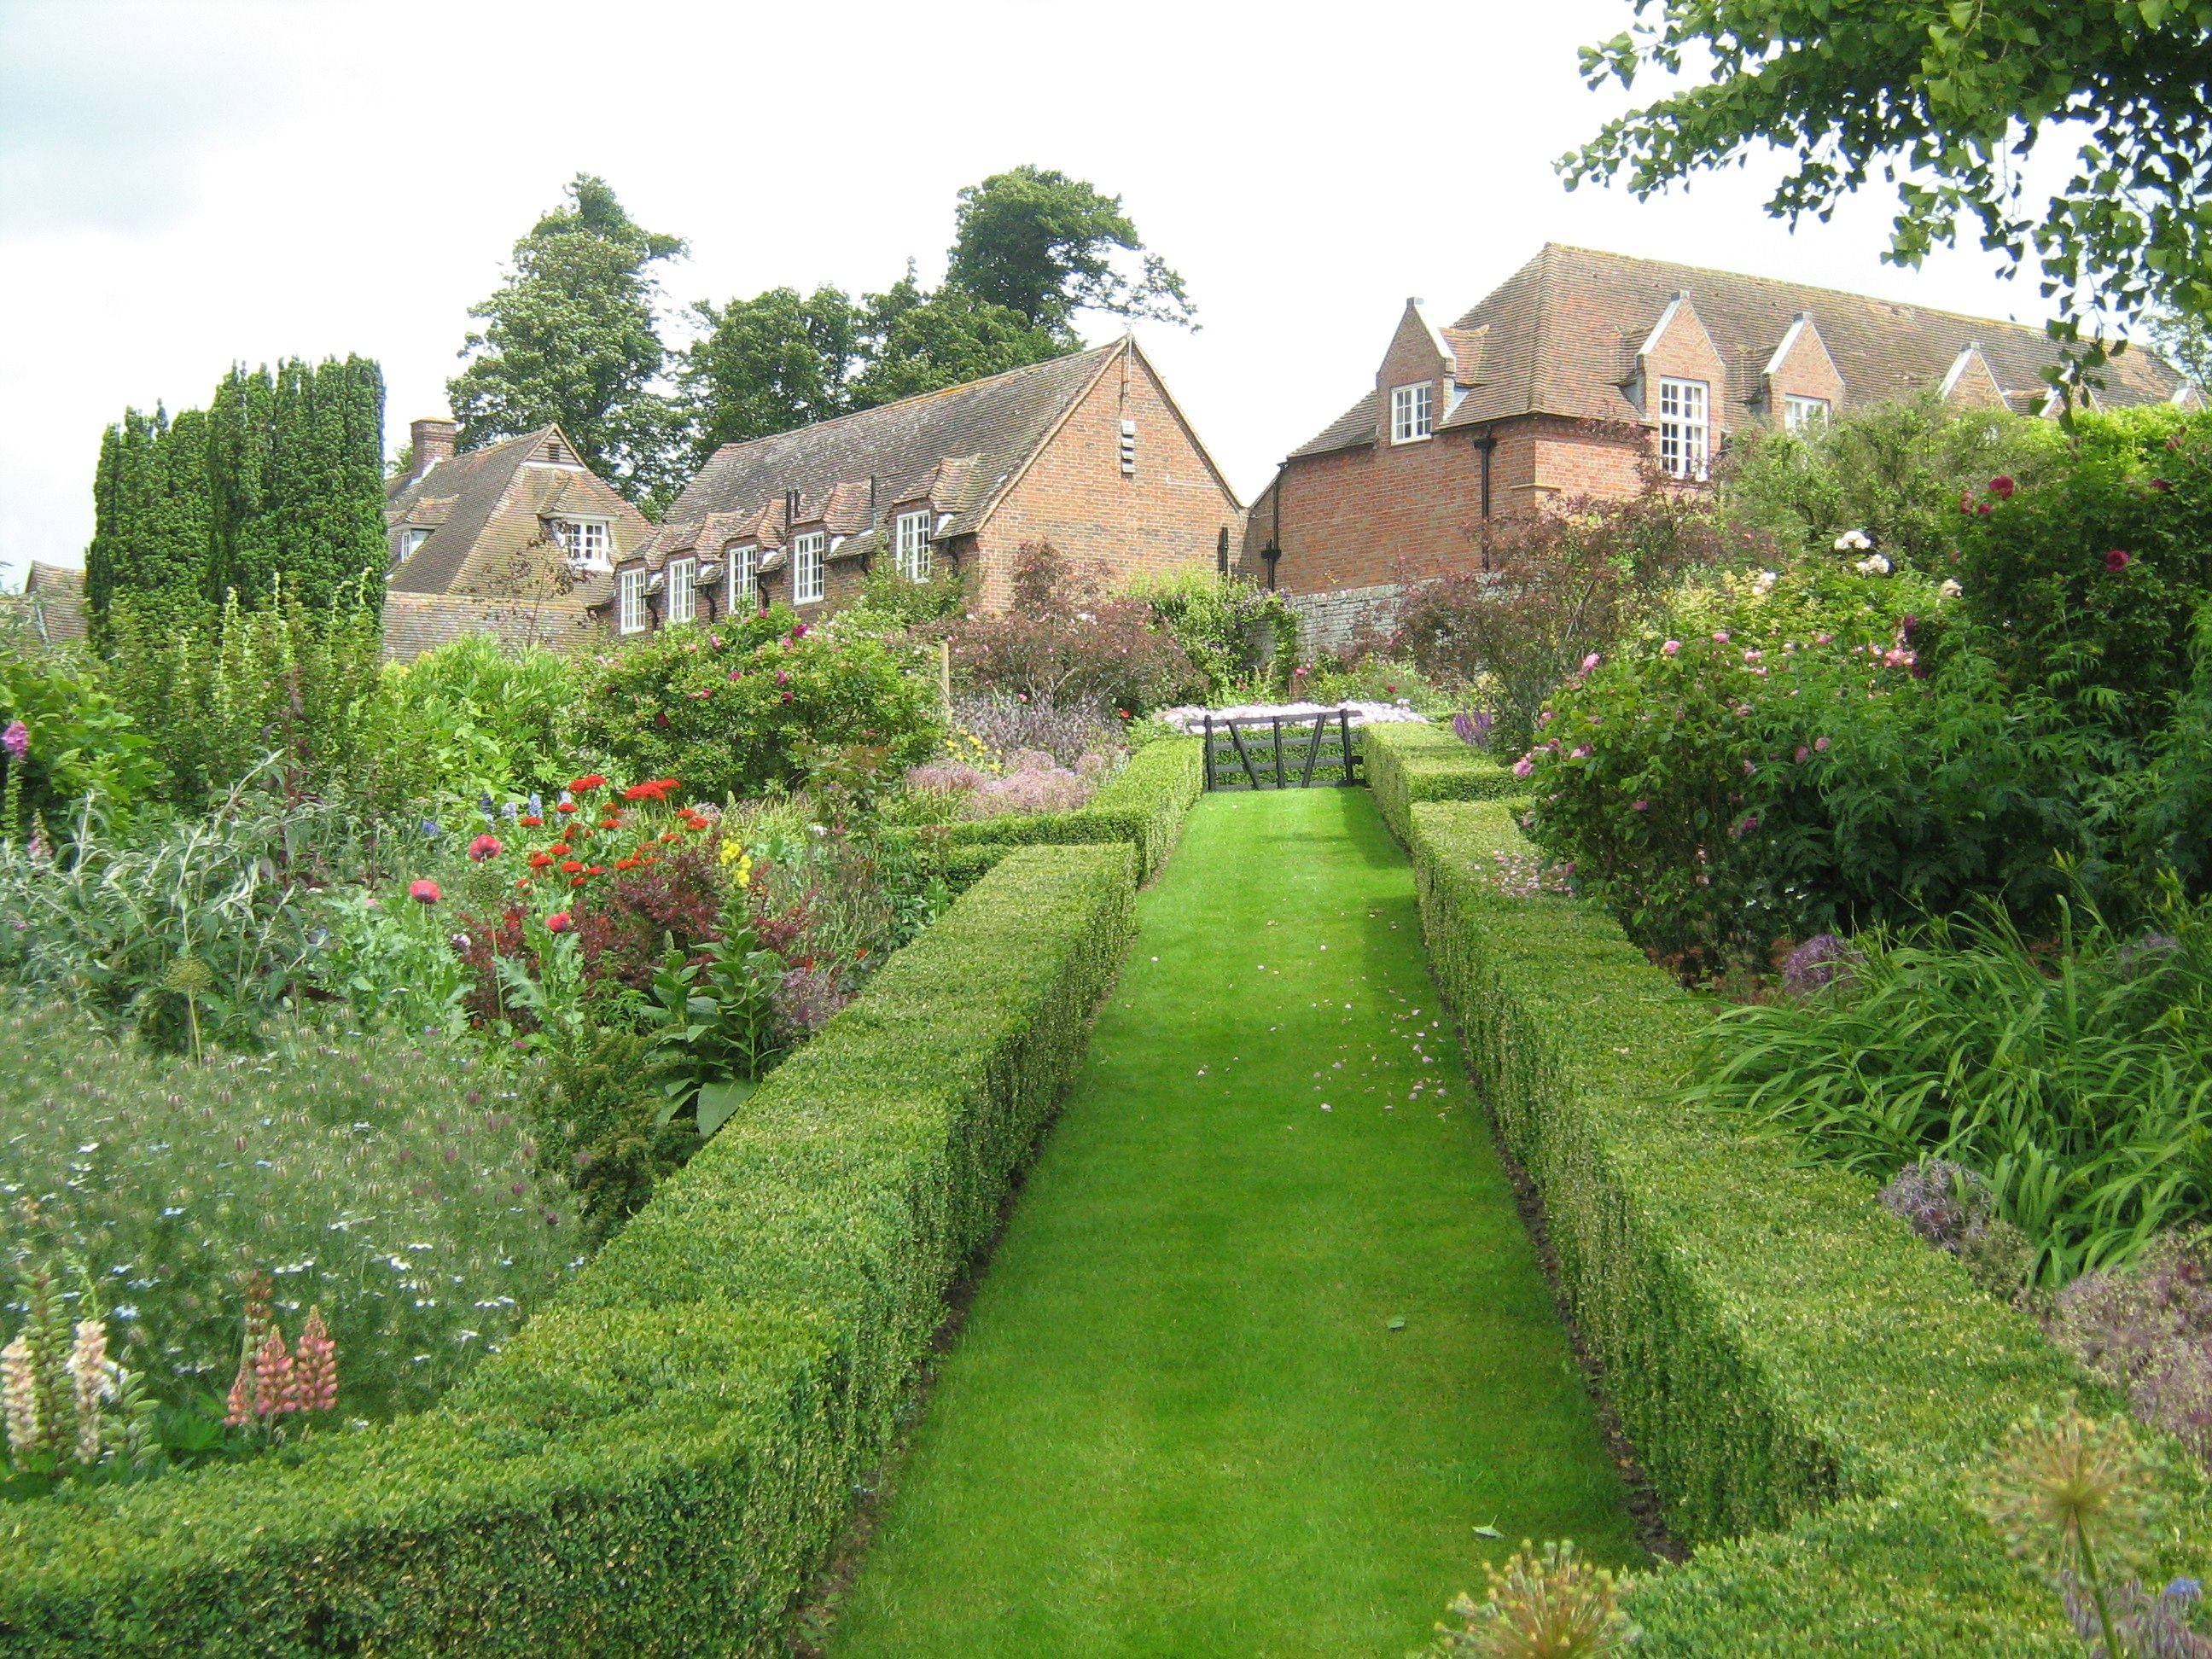 An English Garden